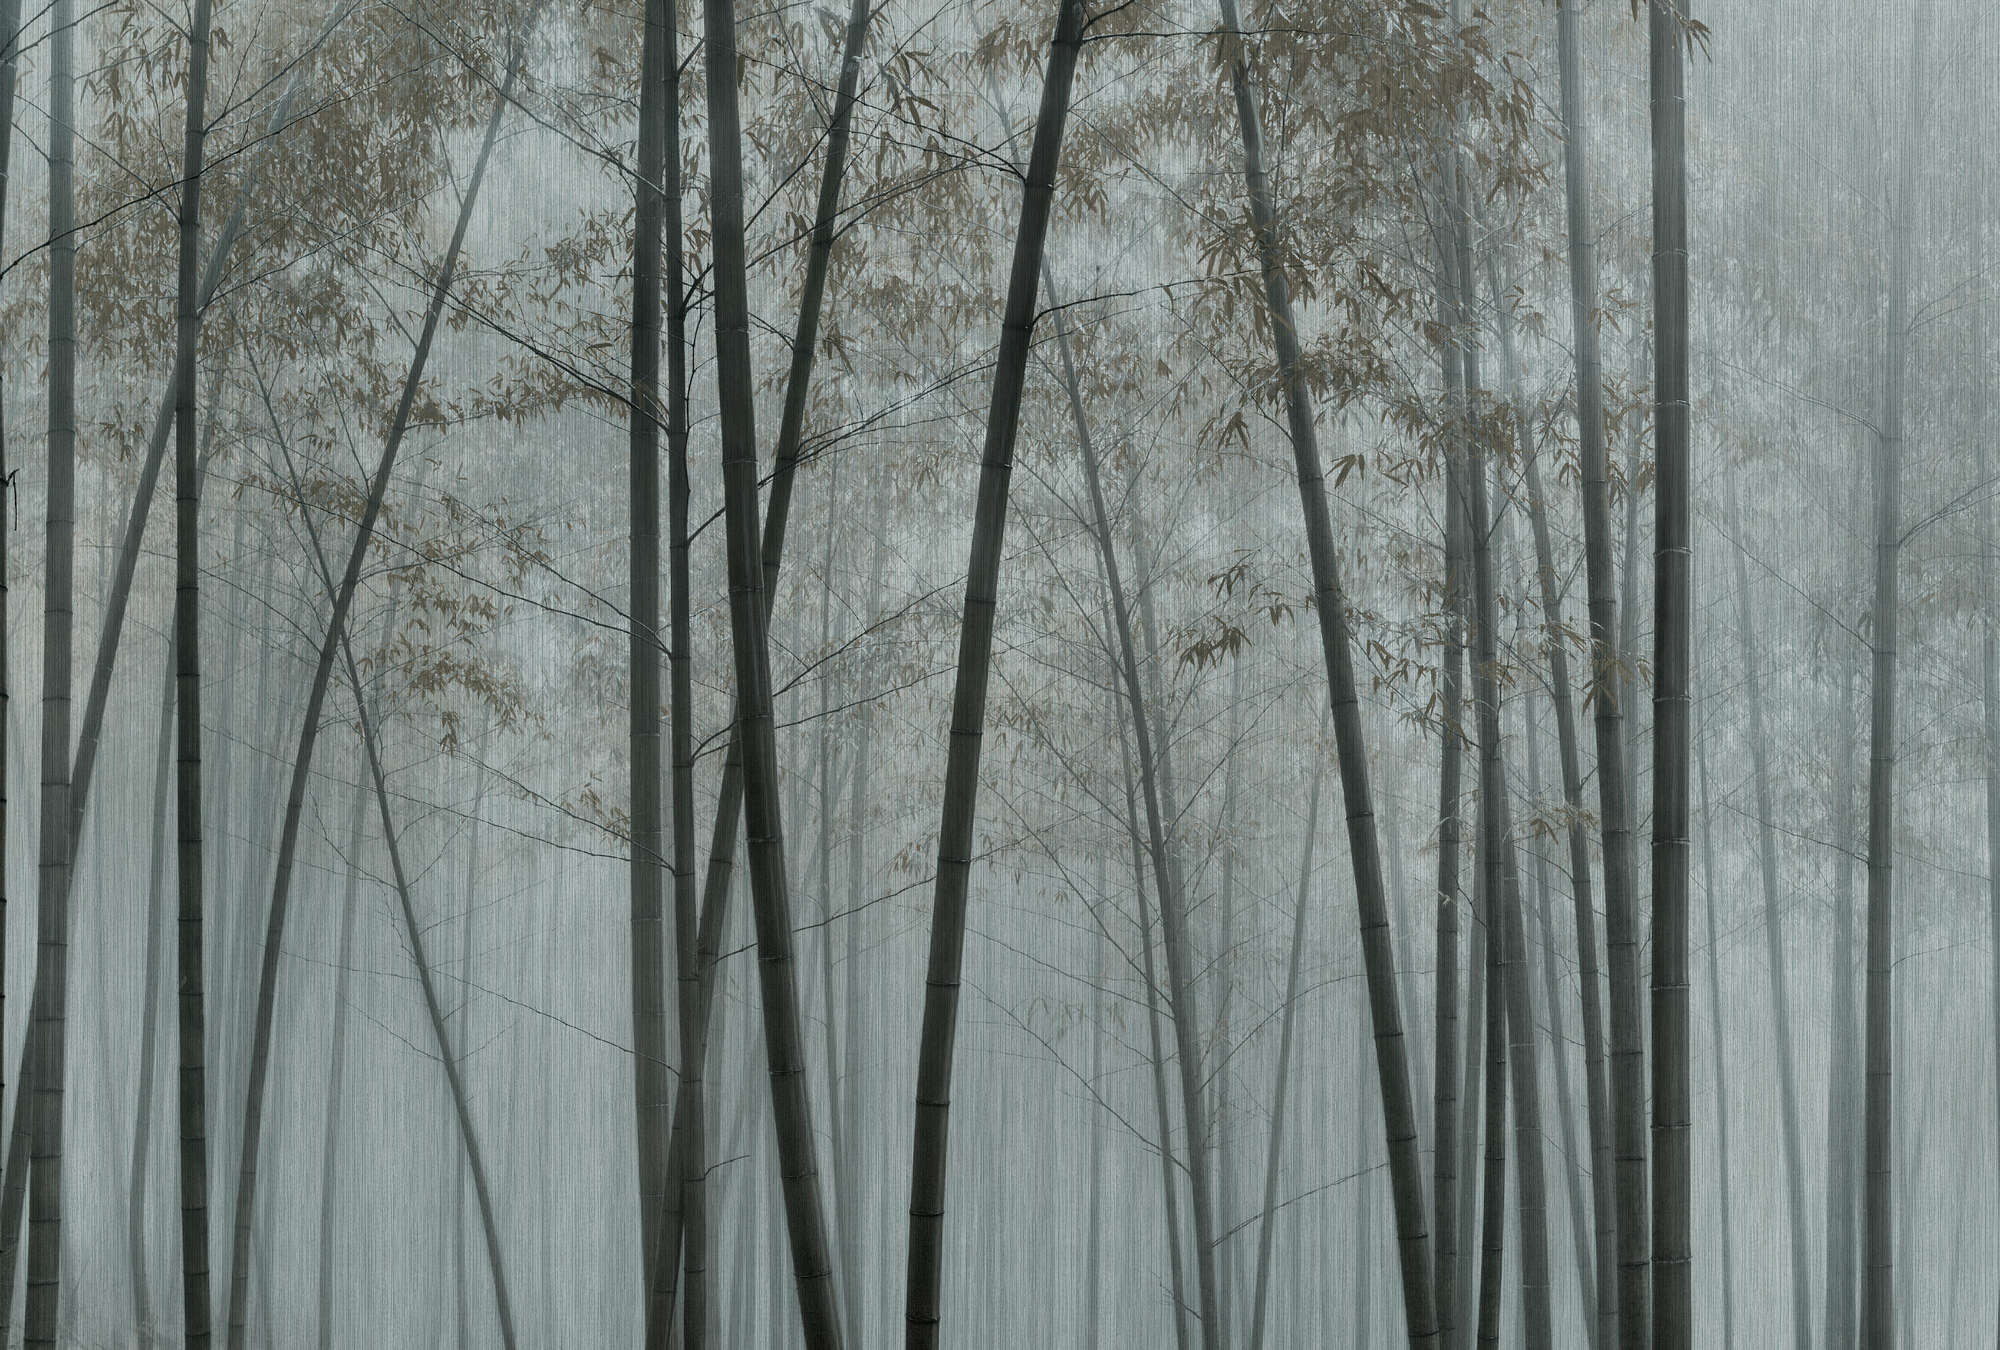             In the Bamboo 1 - Papier peint panoramique forêt de bambous dans la brume
        